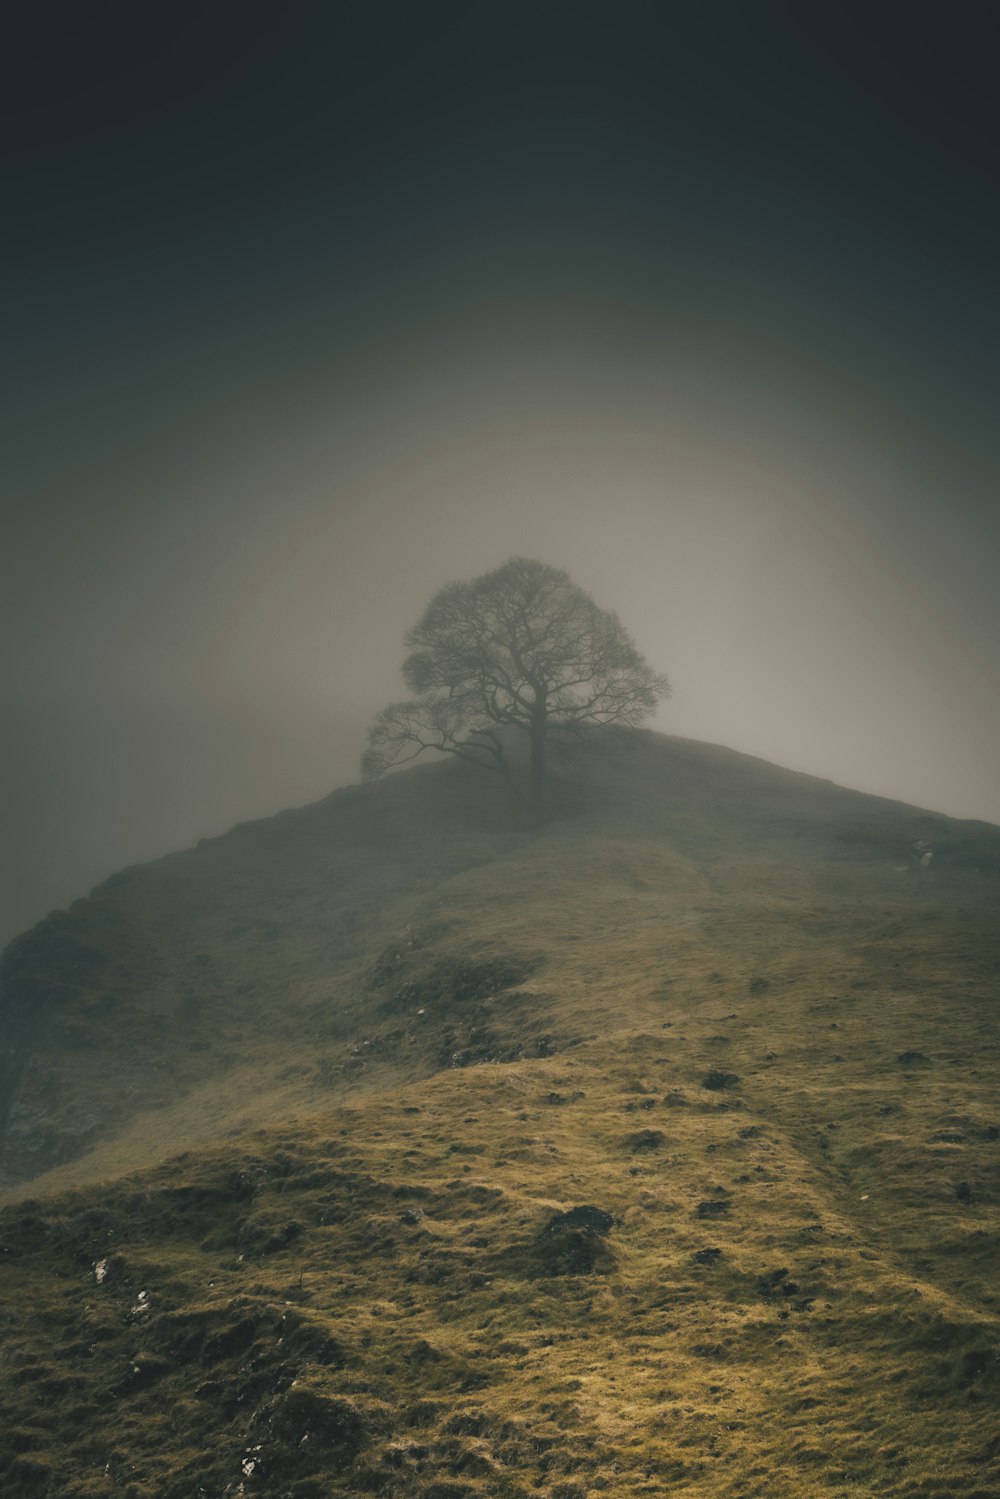 Un albero solitario seduto sulla cima di una collina